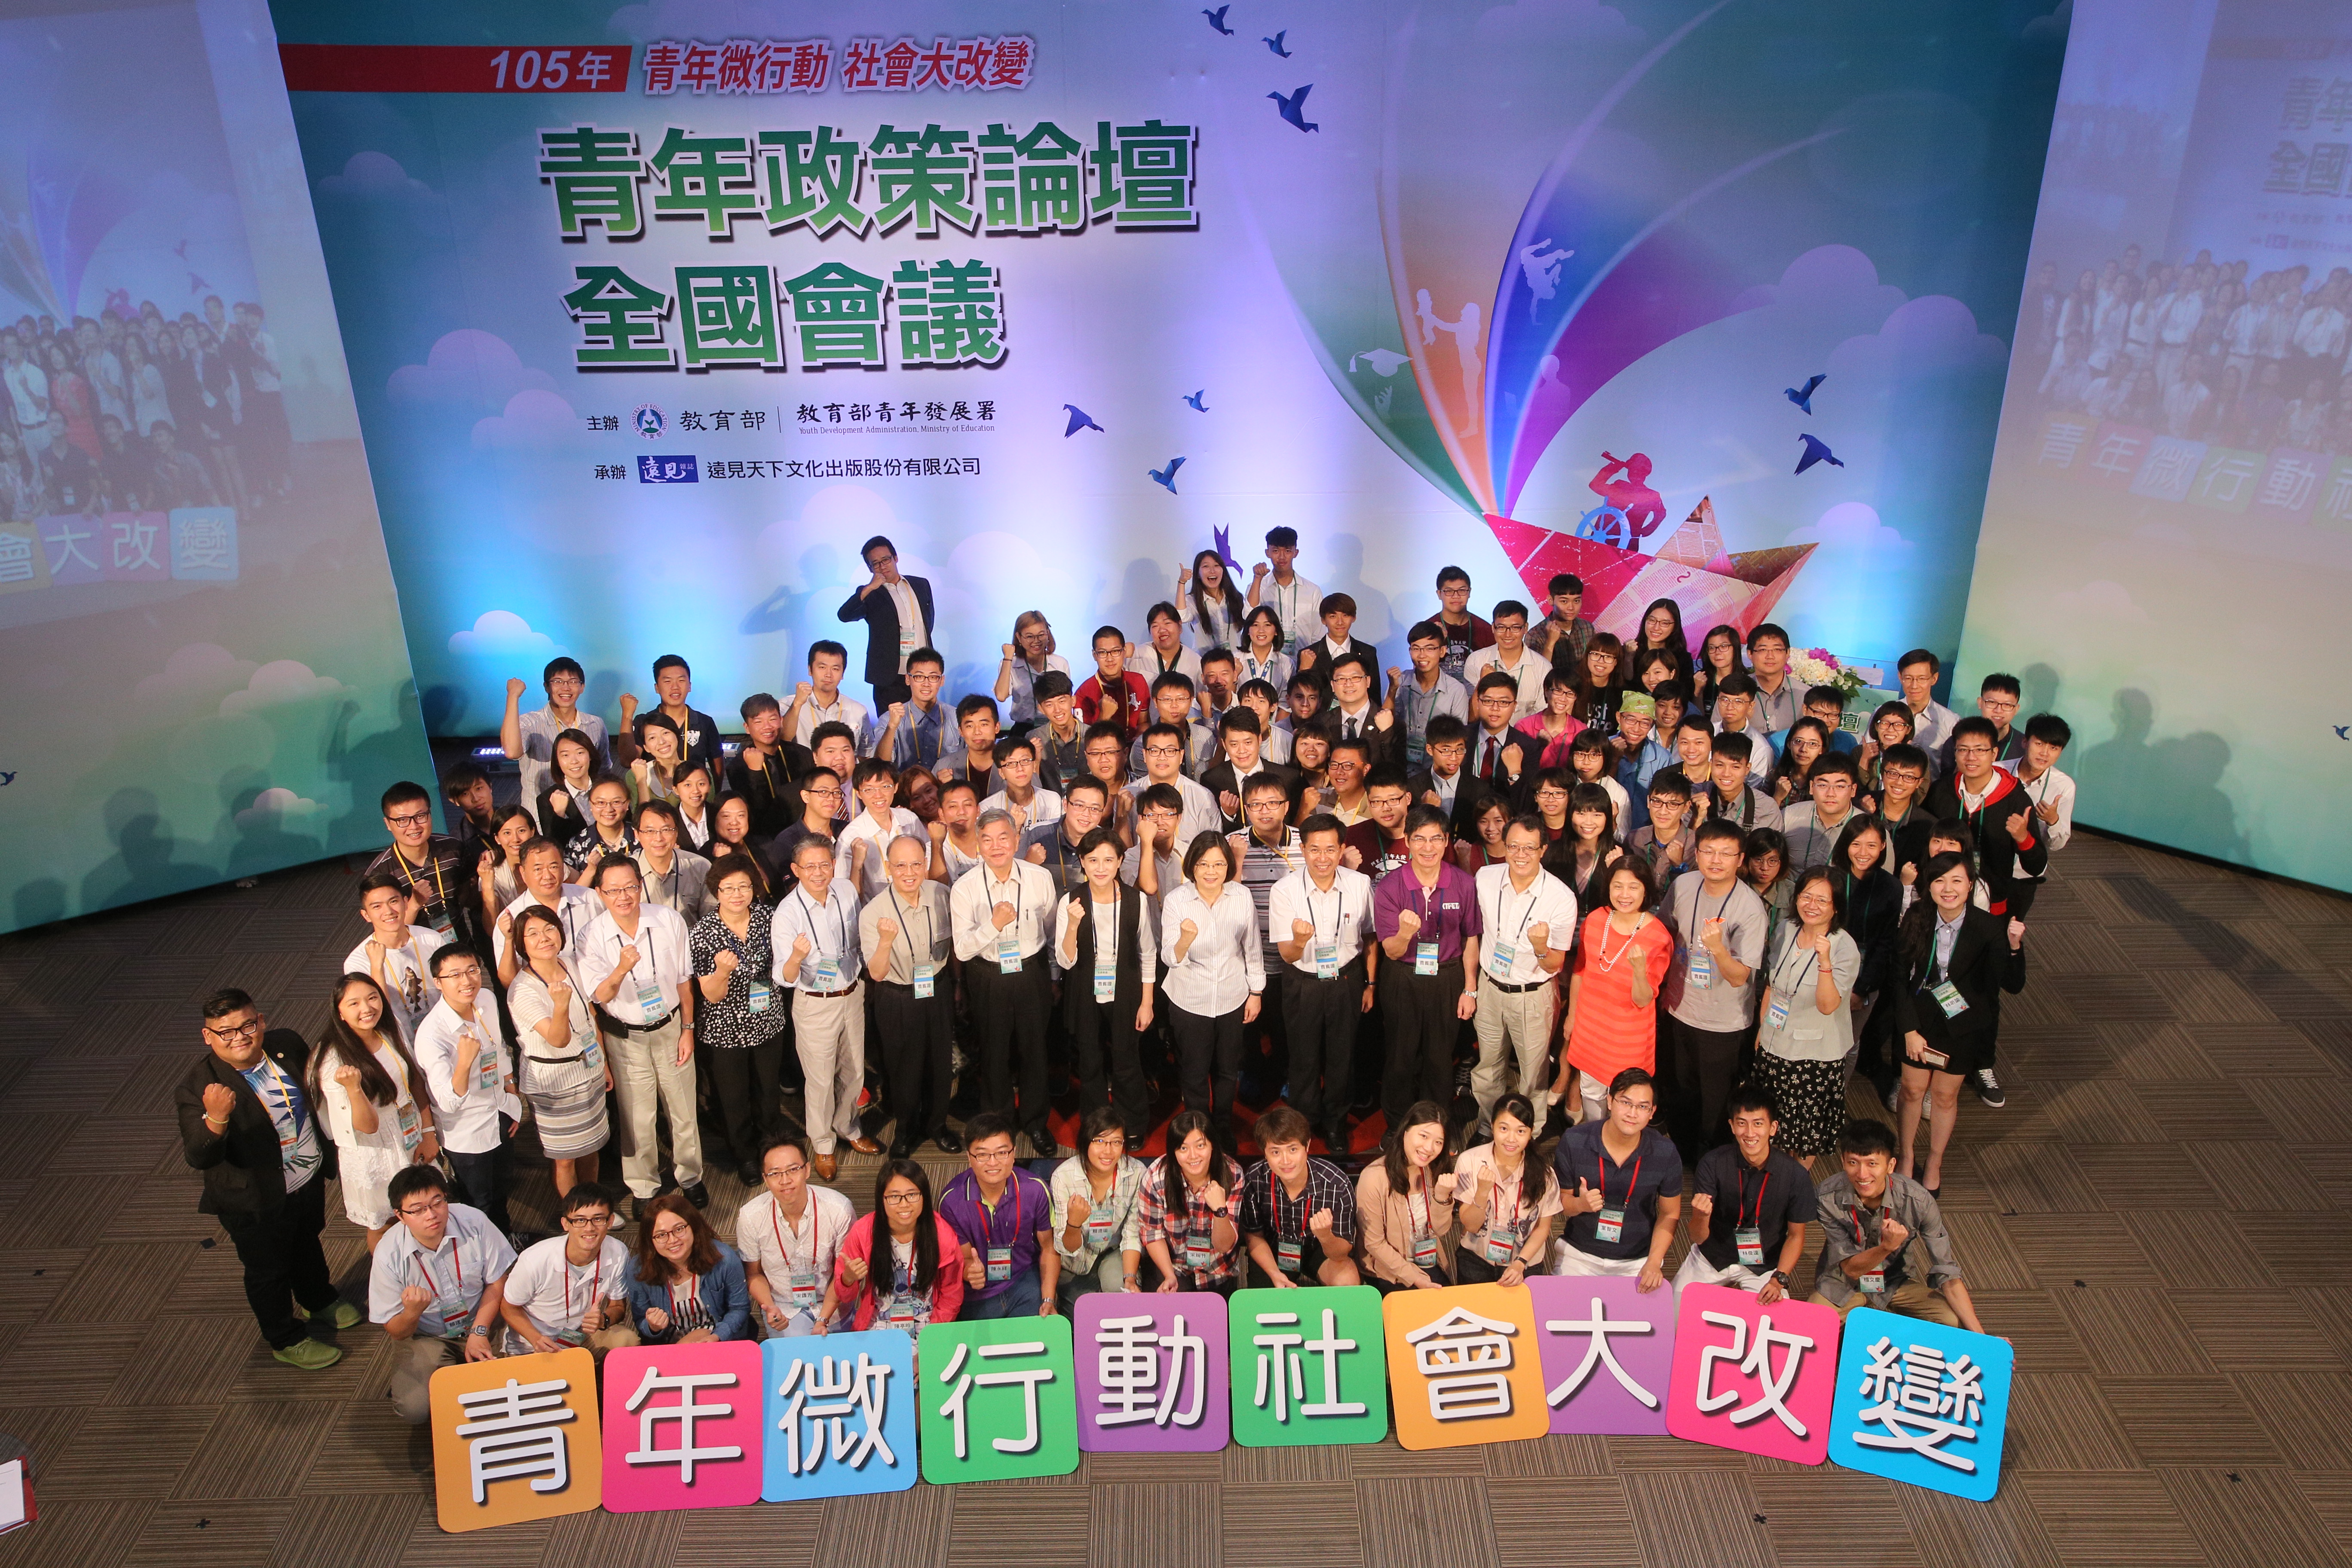 20161122青年故事:提升兩岸青年交流的政策好點子－－台灣好日記 教育部青年署青年團隊政策好點子競賽心得分享